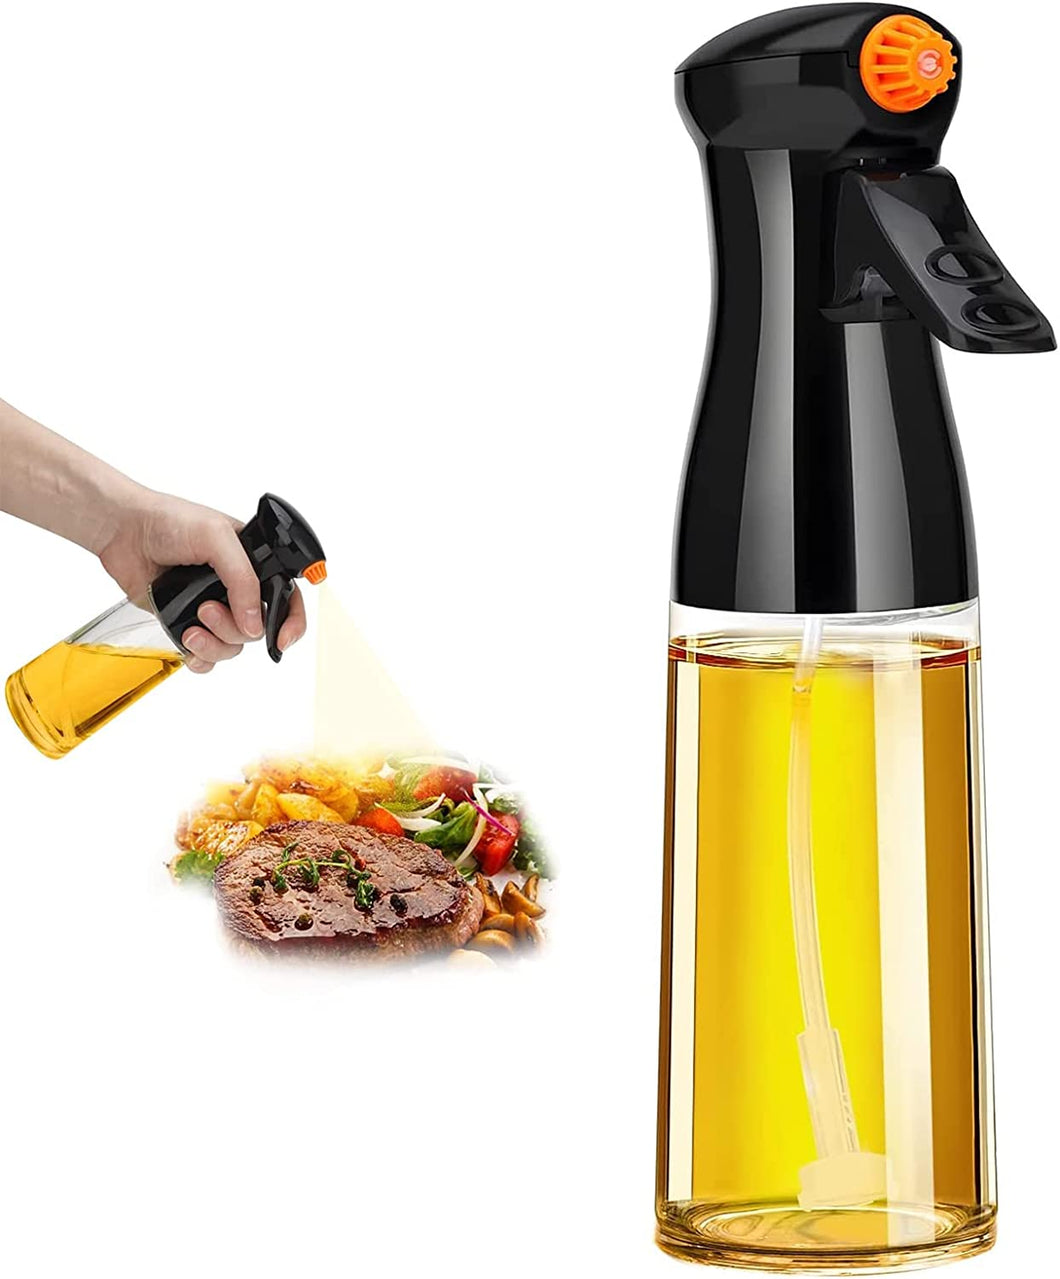 210ml Glass Olive Oil Sprayer for Cooking - Oil Dispenser Bottle Spray Mister - Refillable Food Grade Oil Vinegar Spritzer Sprayer Bottles for Kitchen, Air Fryer, Salad, Baking, Grilling, Frying